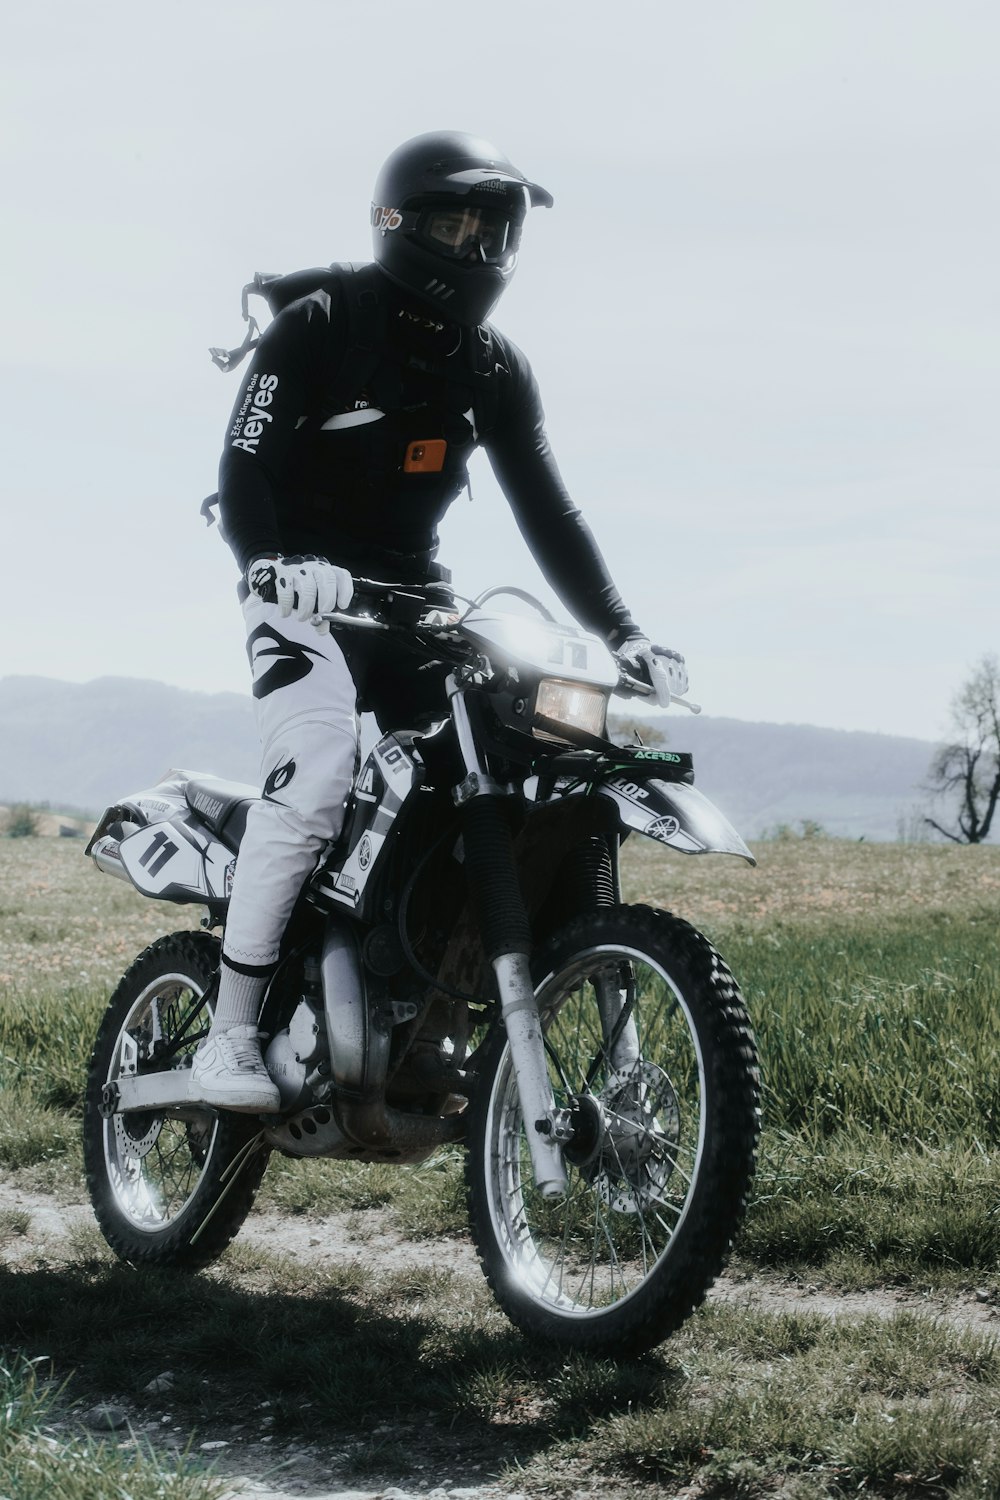 moto noire et blanche sur un champ d’herbe verte pendant la journée